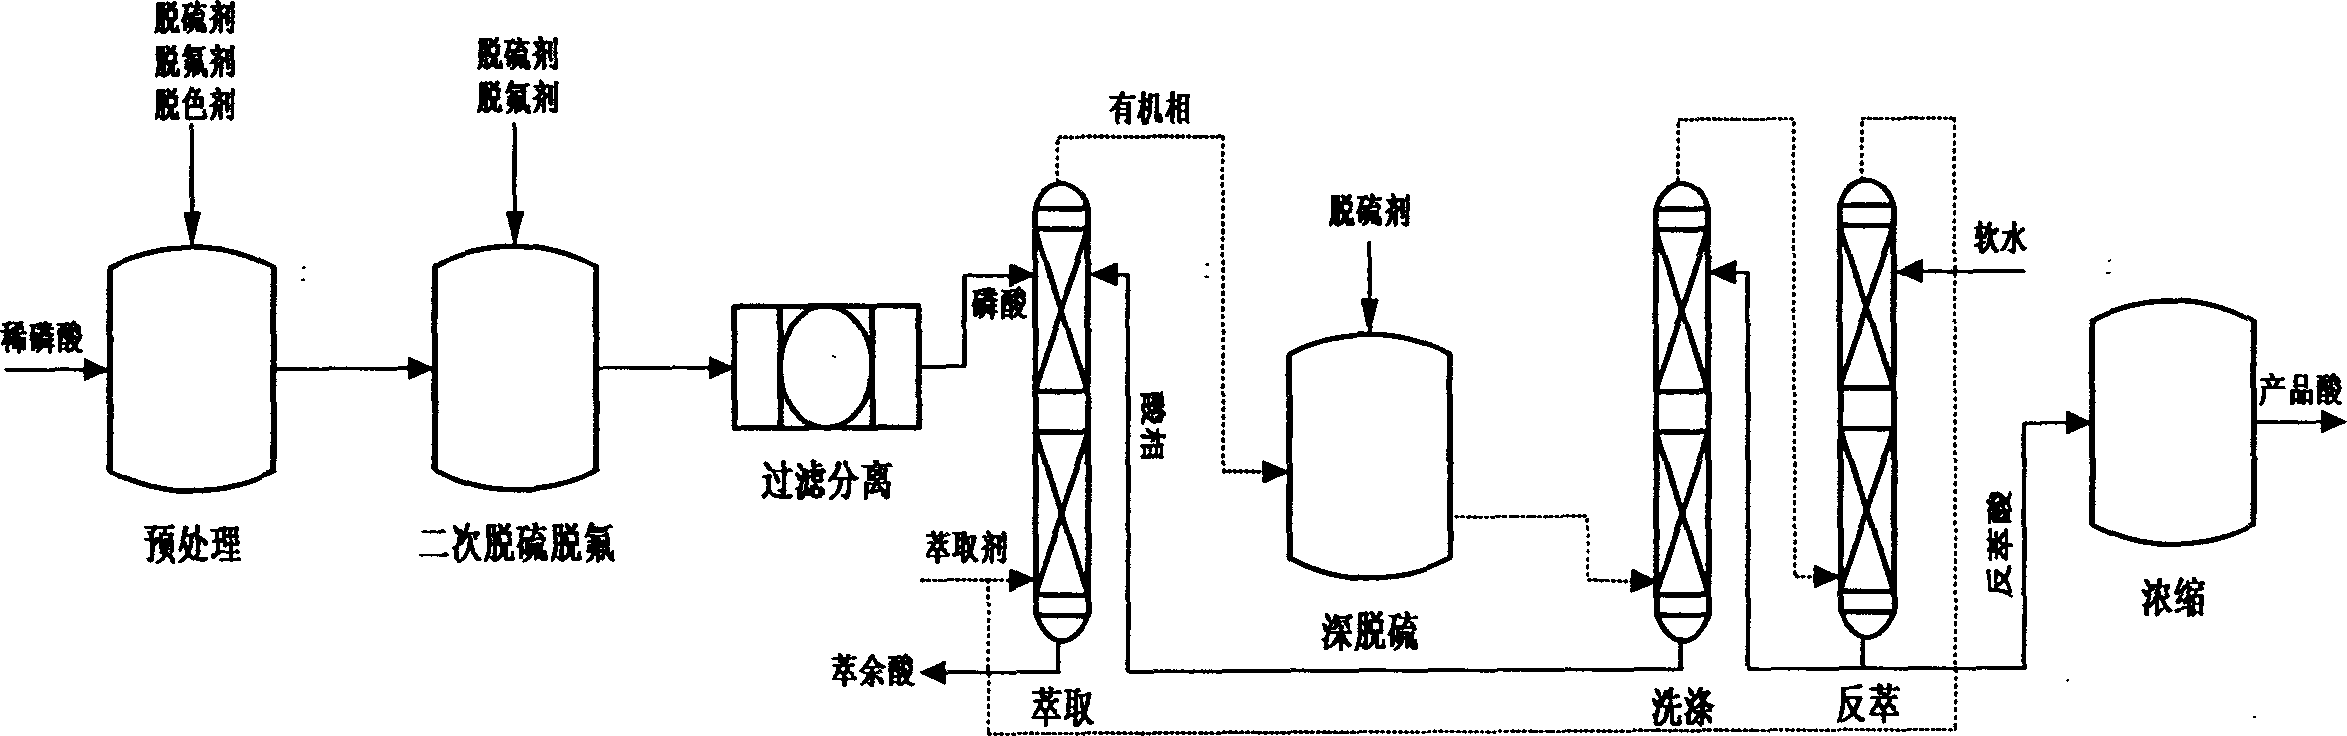 Method for preparing technical grade phosphoric acid, foodstuff grade phosphoric acid and phosphate using wet method and thin phosphoric acid